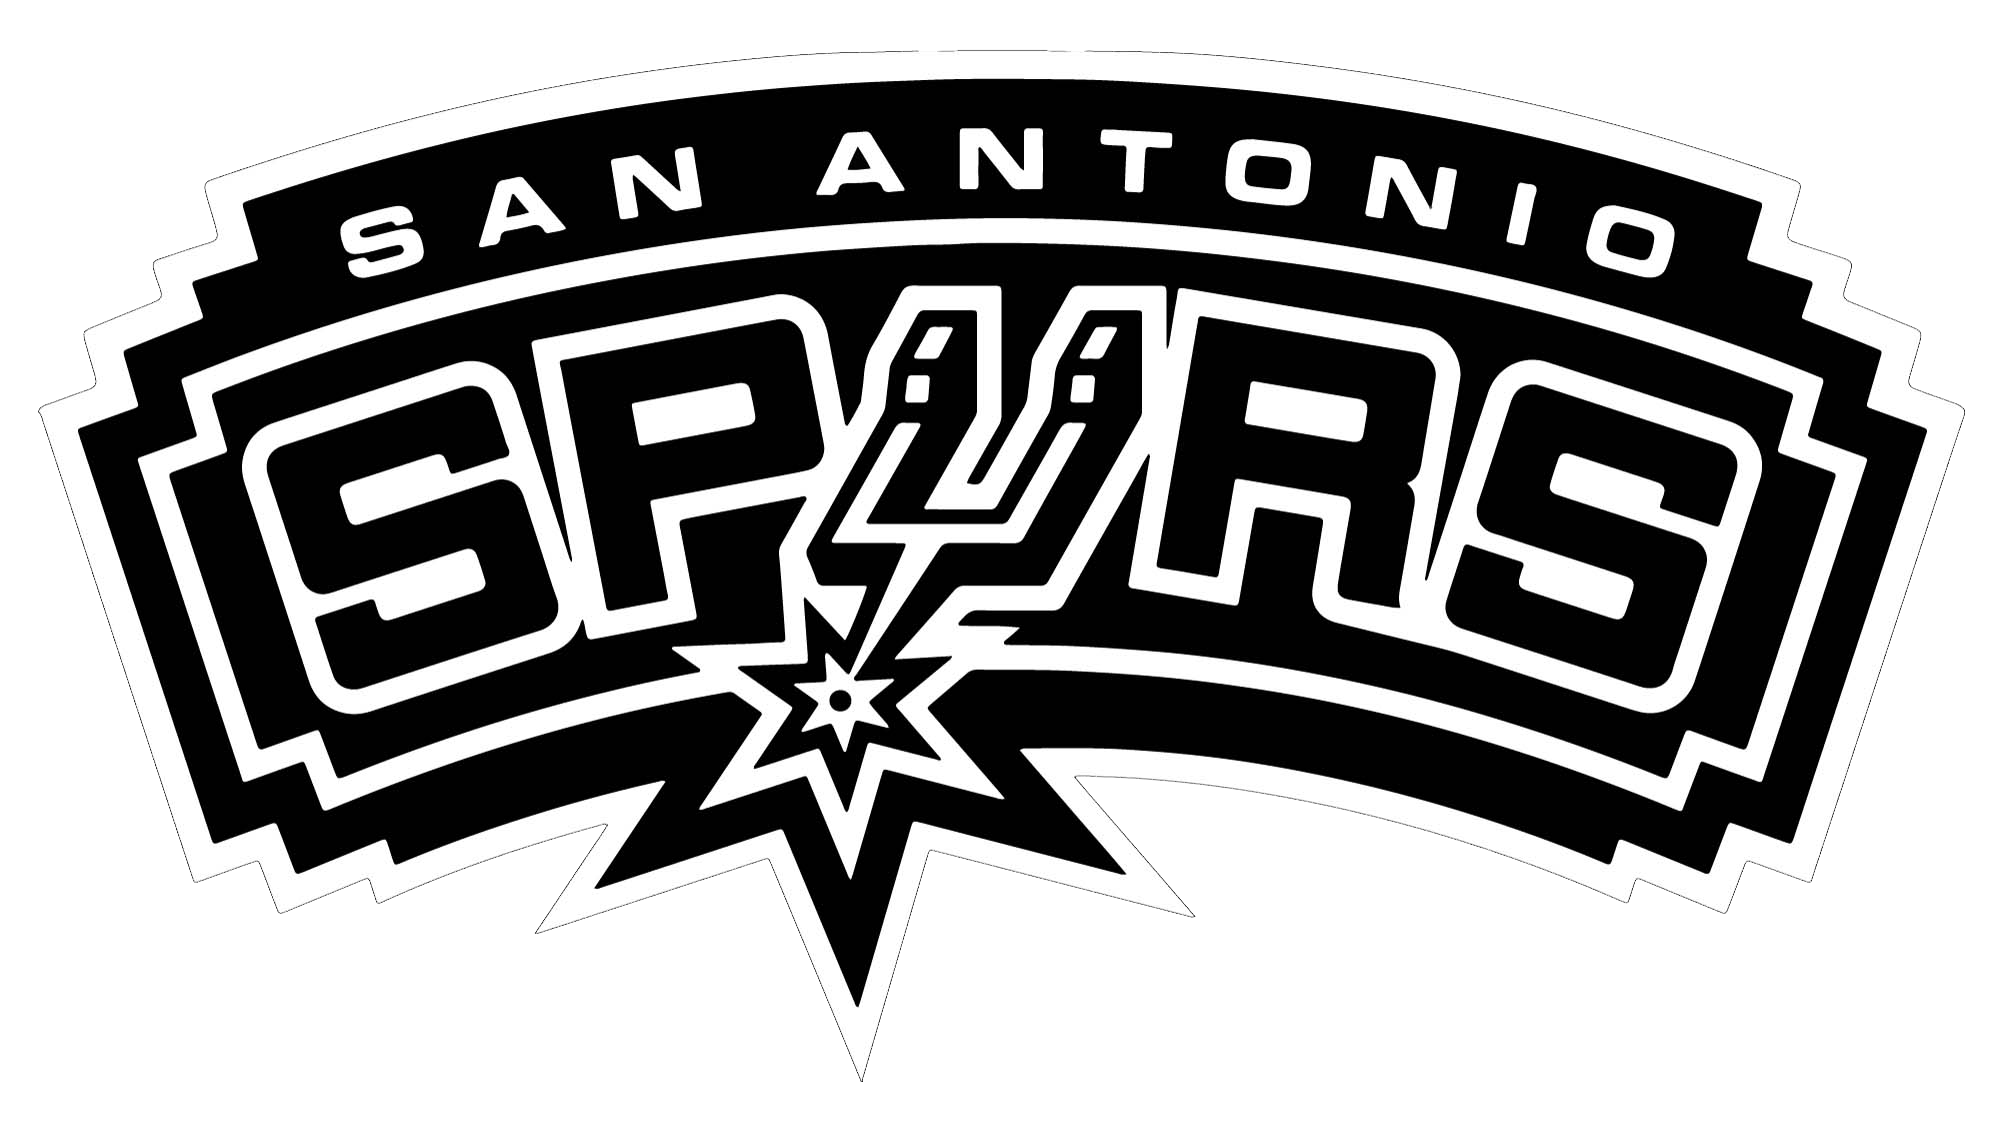 San Antonio Spurs Clipart PNG Image